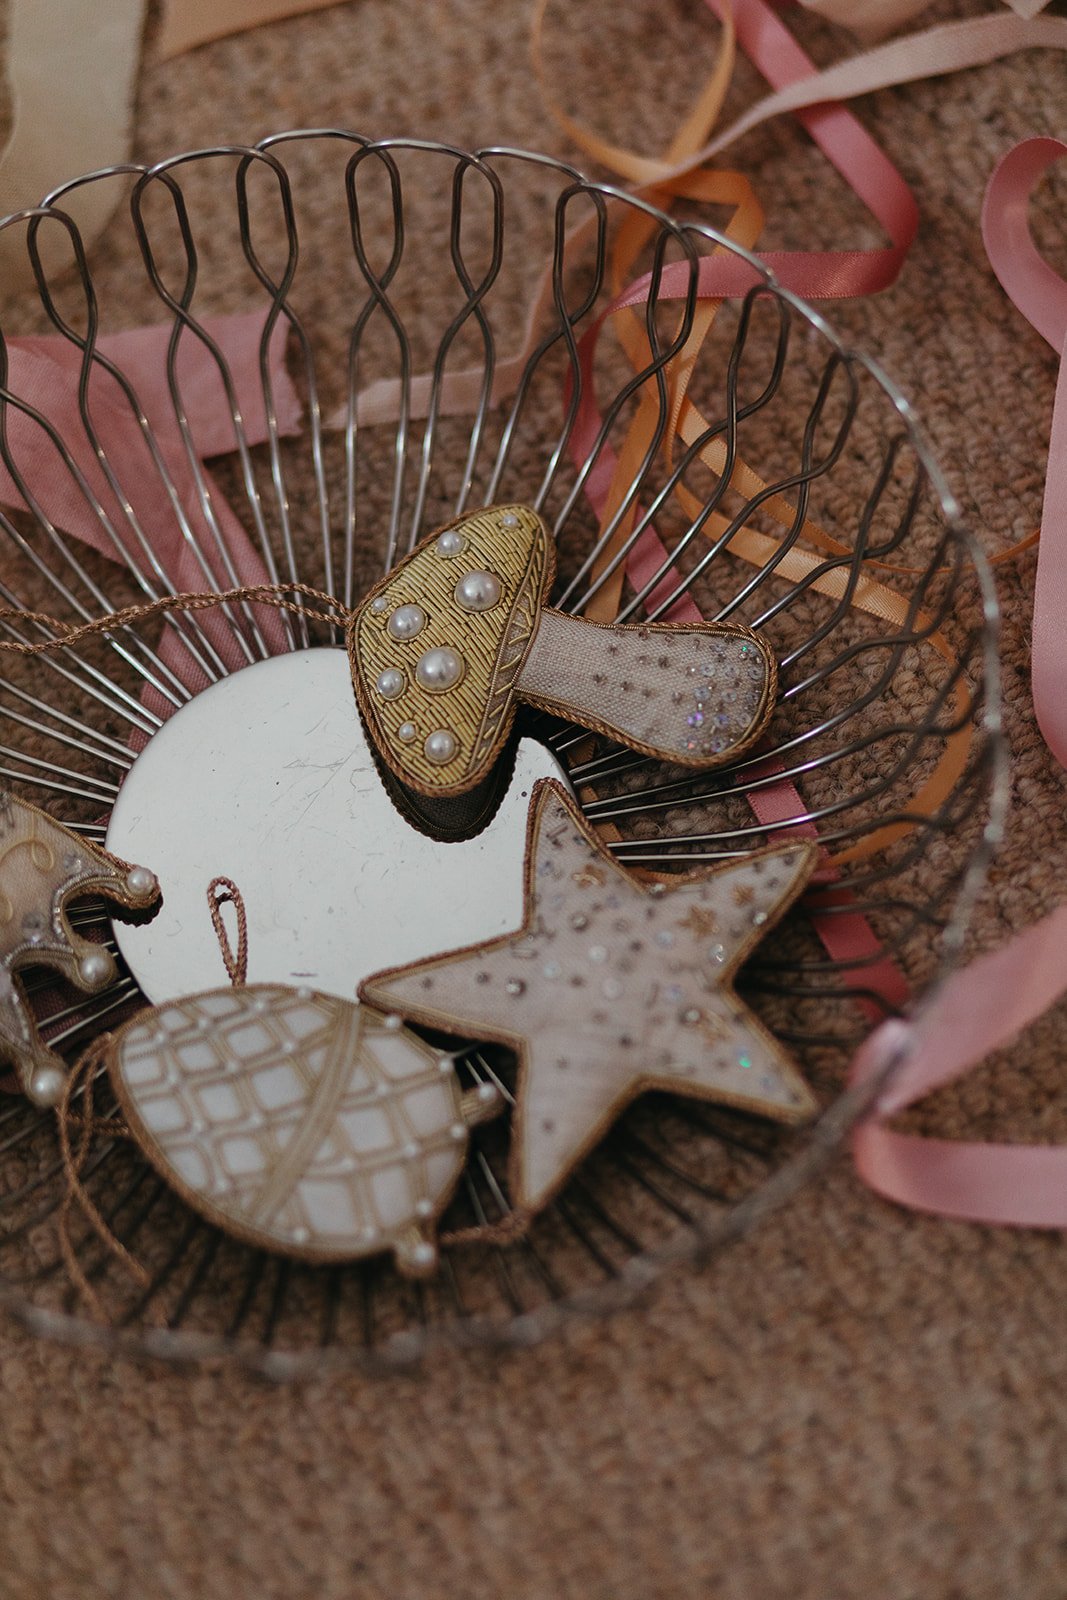 Mushroom toadstool holiday ornament.jpg